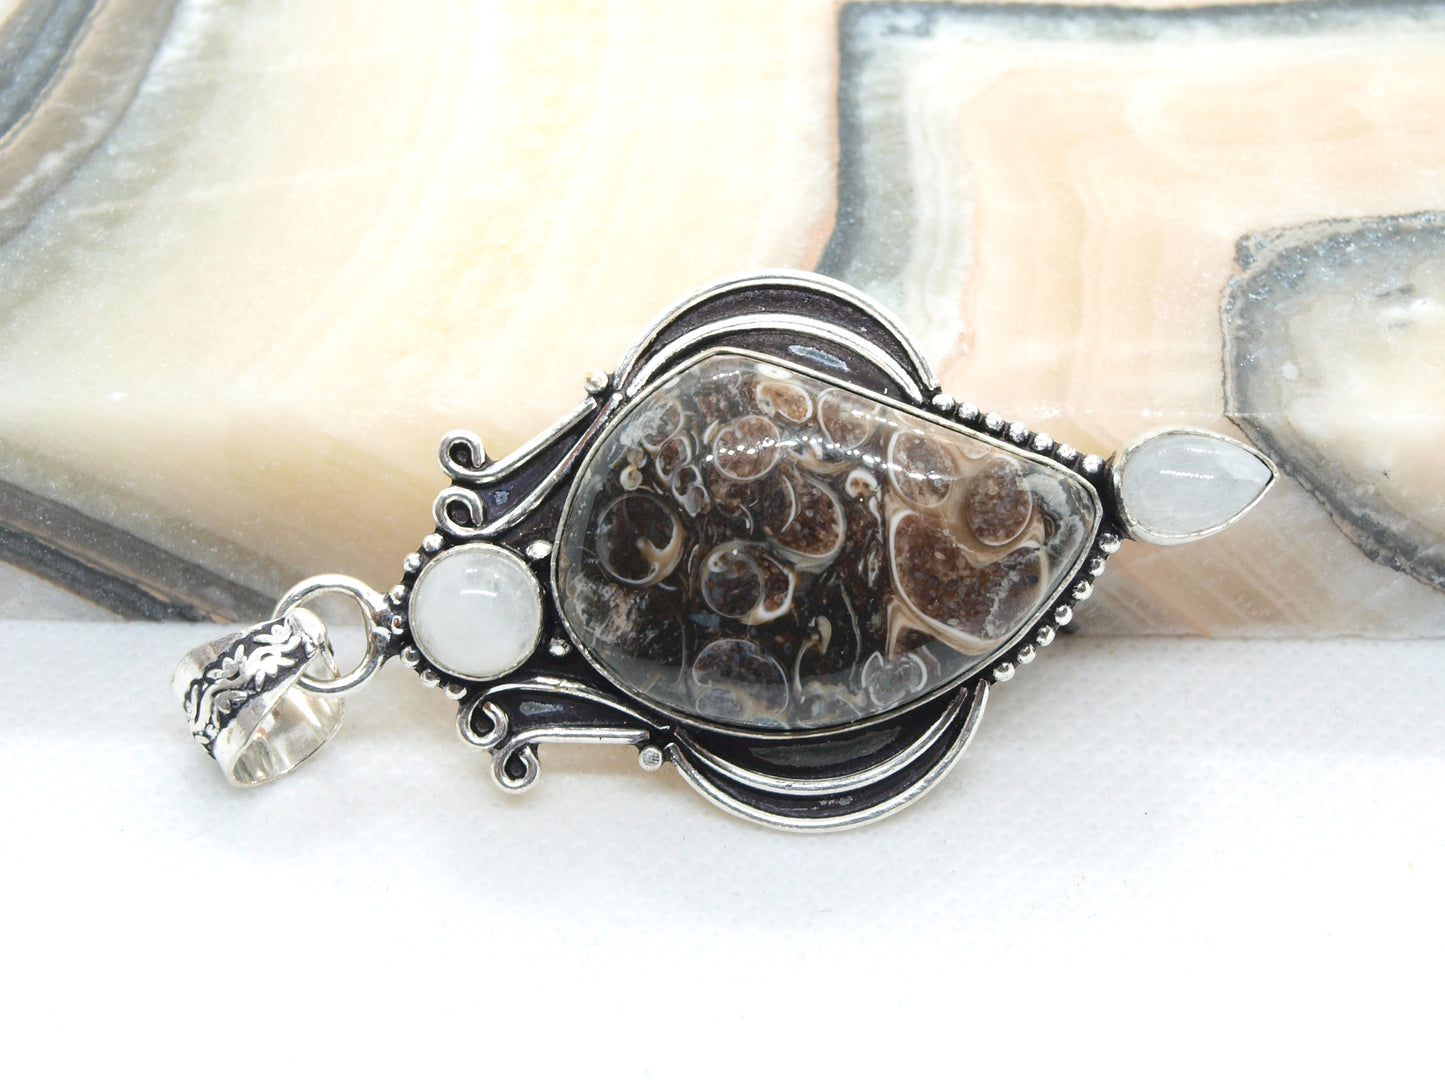 Turritella pendant and moonstone